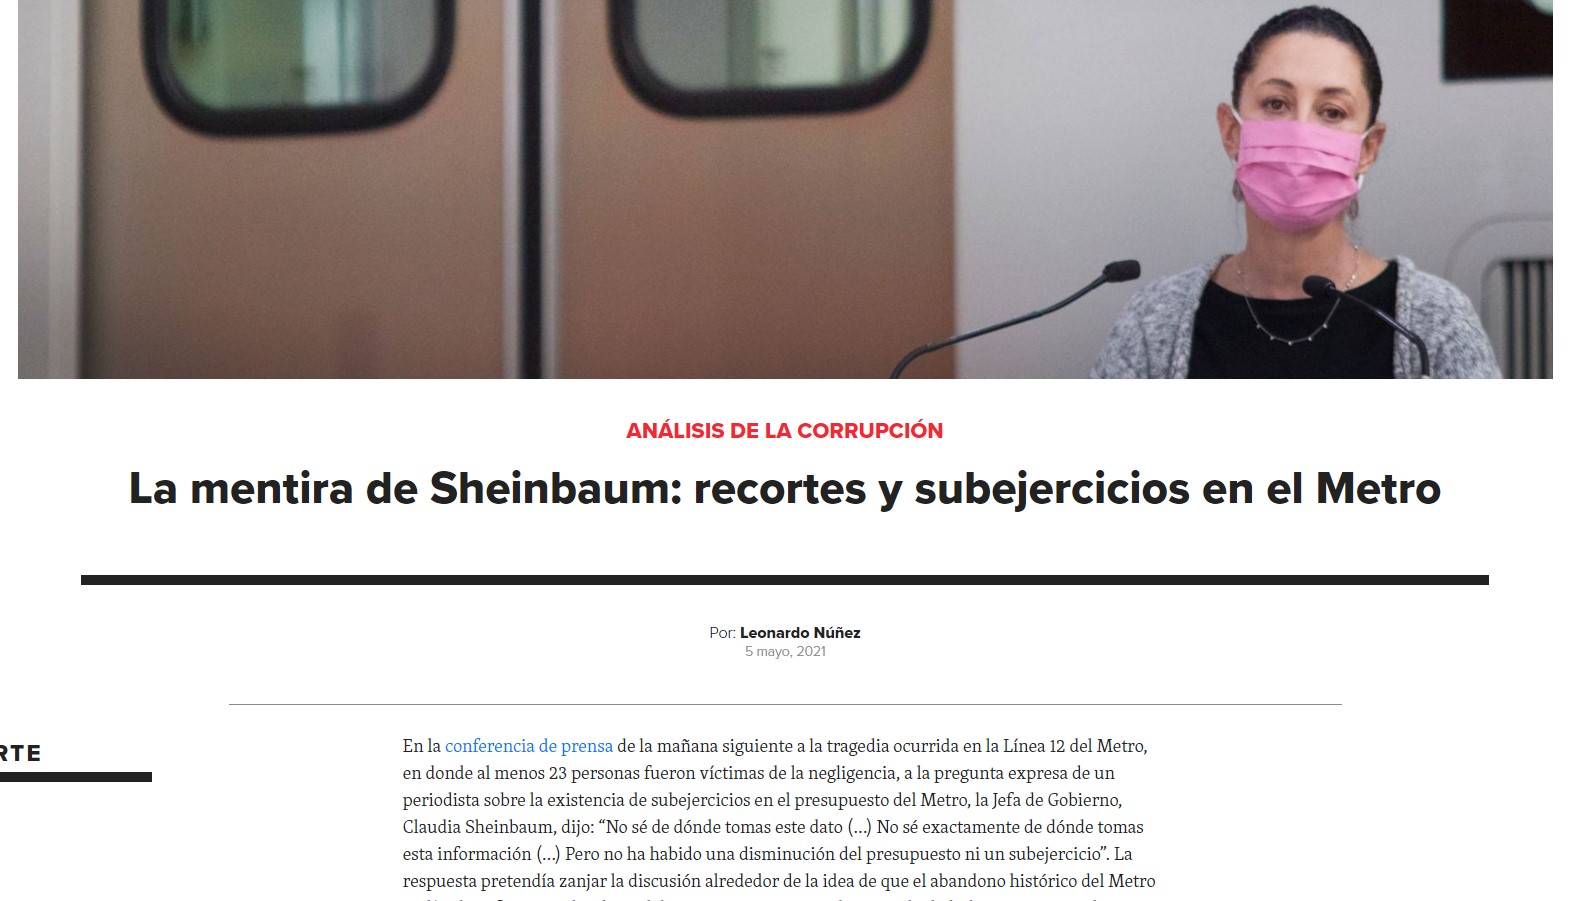 La mentira de Sheinbaum: recortes y subejercicios en el Metro